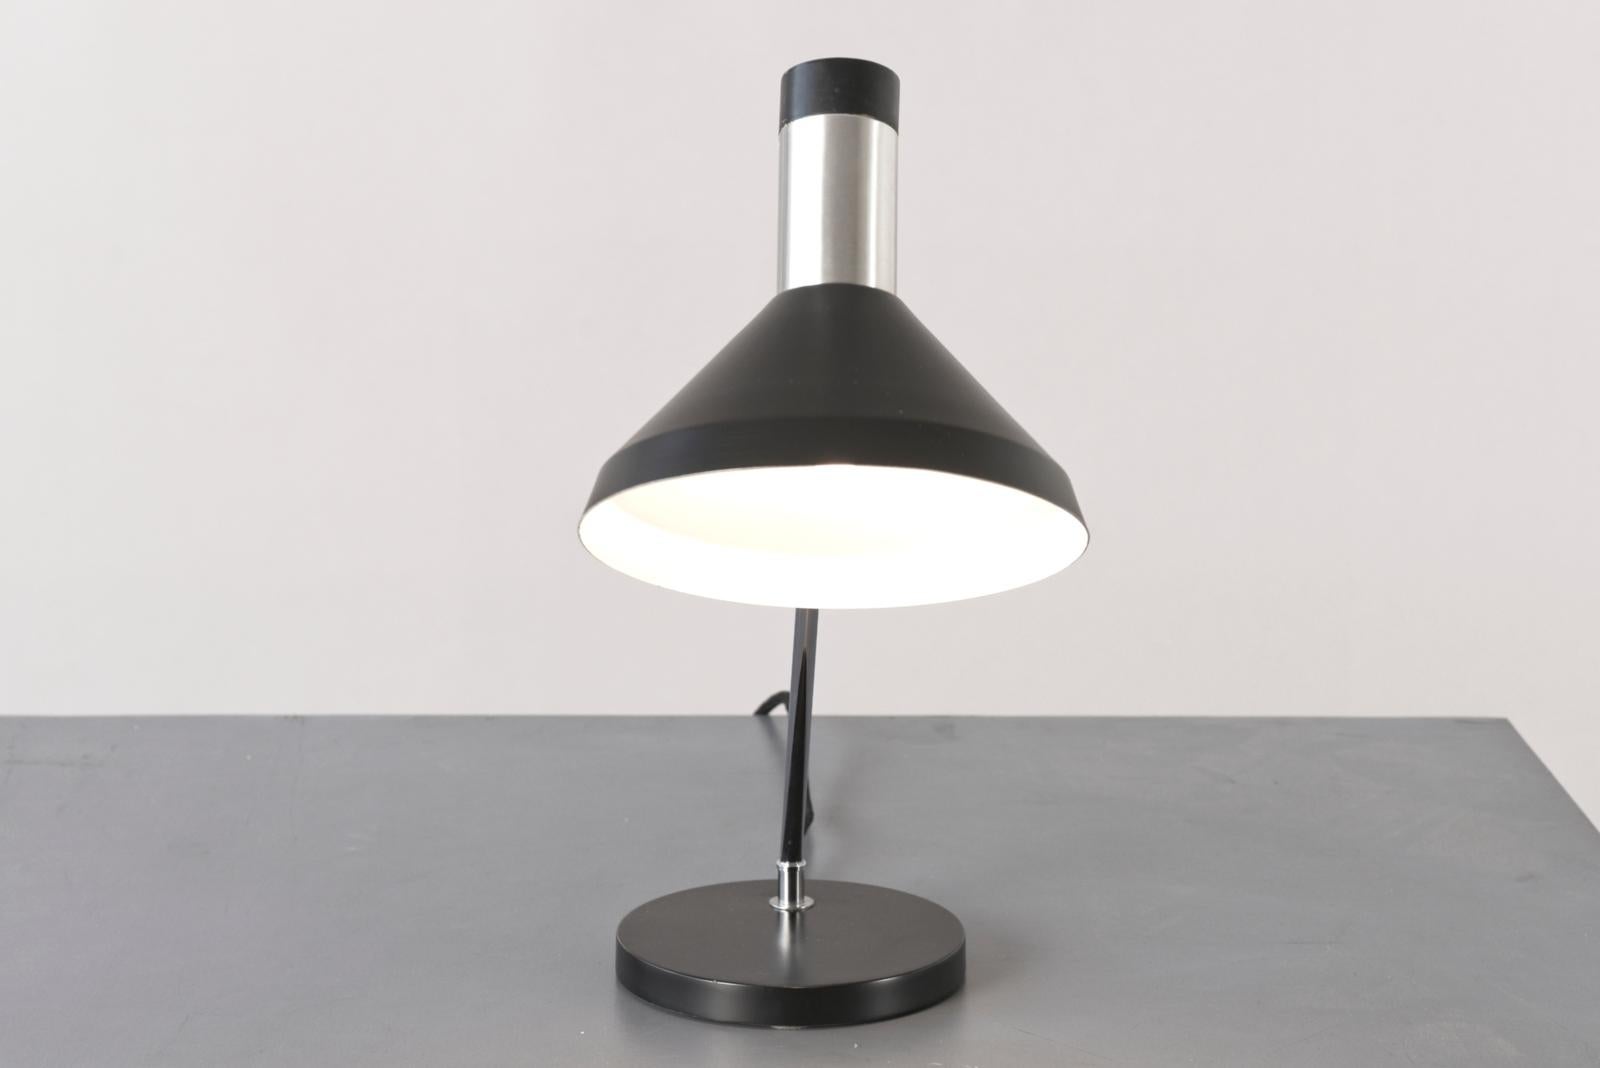 Mid-Century Modern Table Lamp attr. to Rico und Rosemarie Baltensweiler, Switzerland - 1960 For Sale